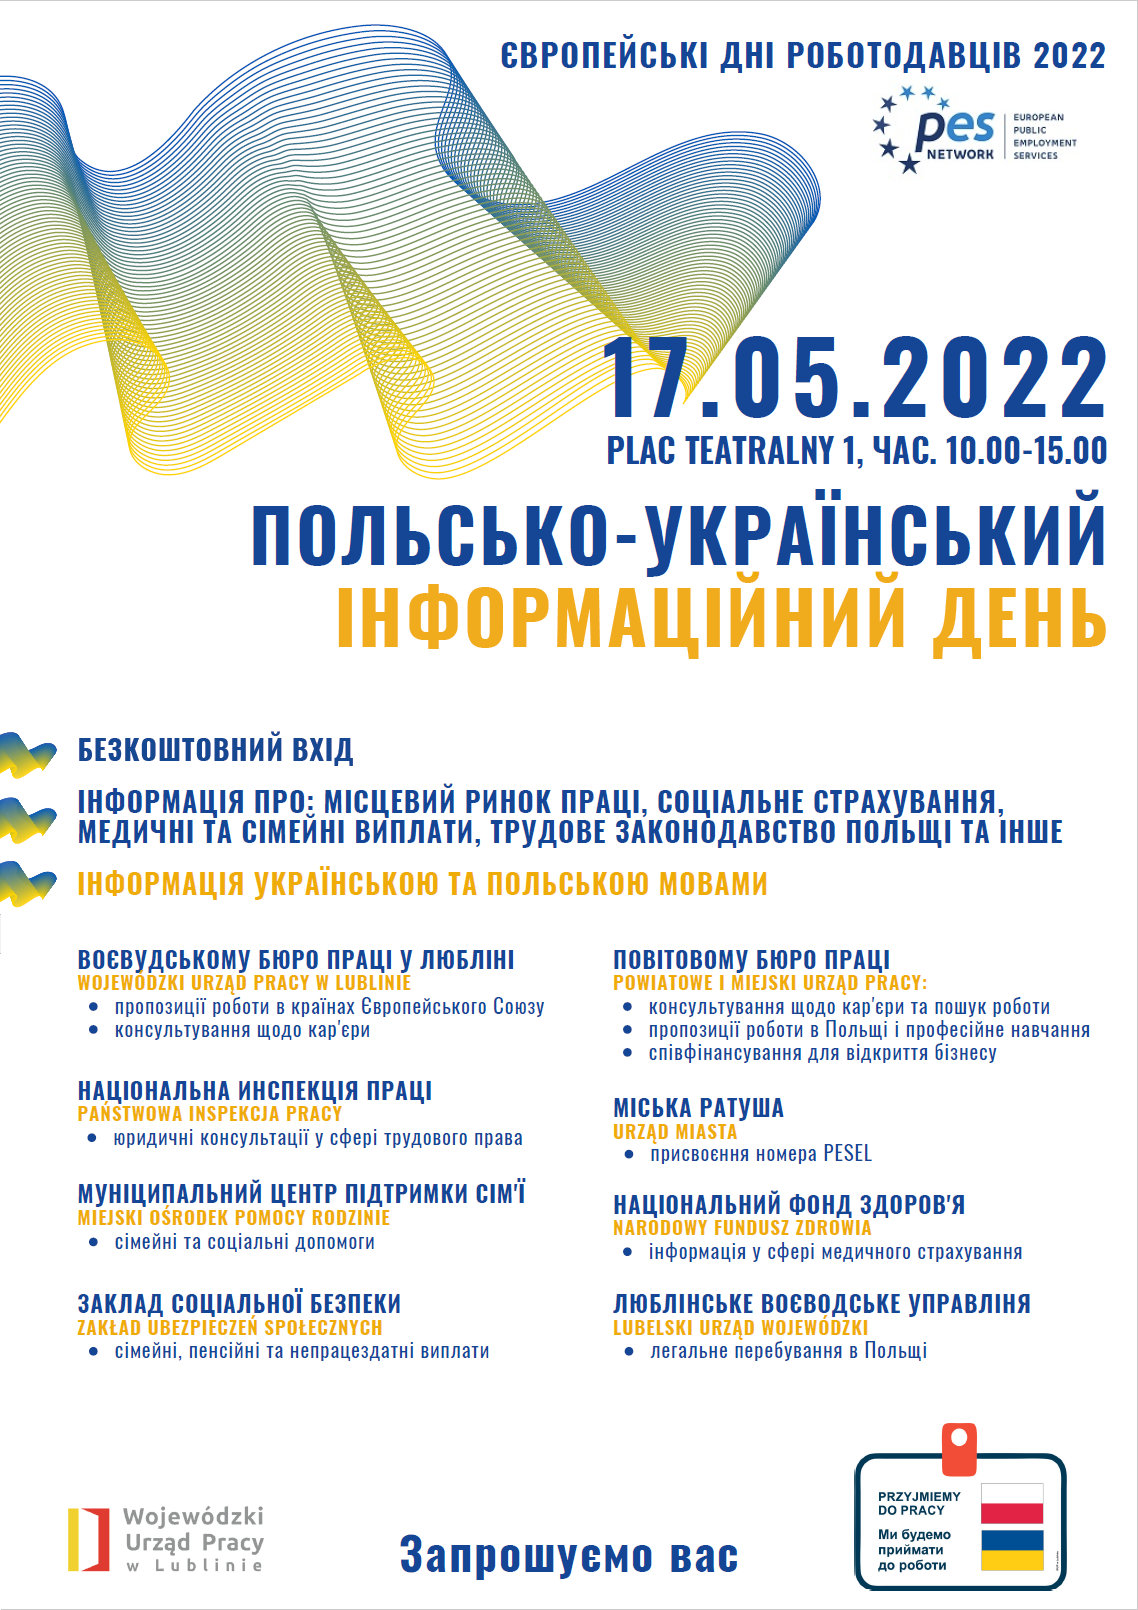 Polsko-Ukraiński Dzień Informacyjny - plakat